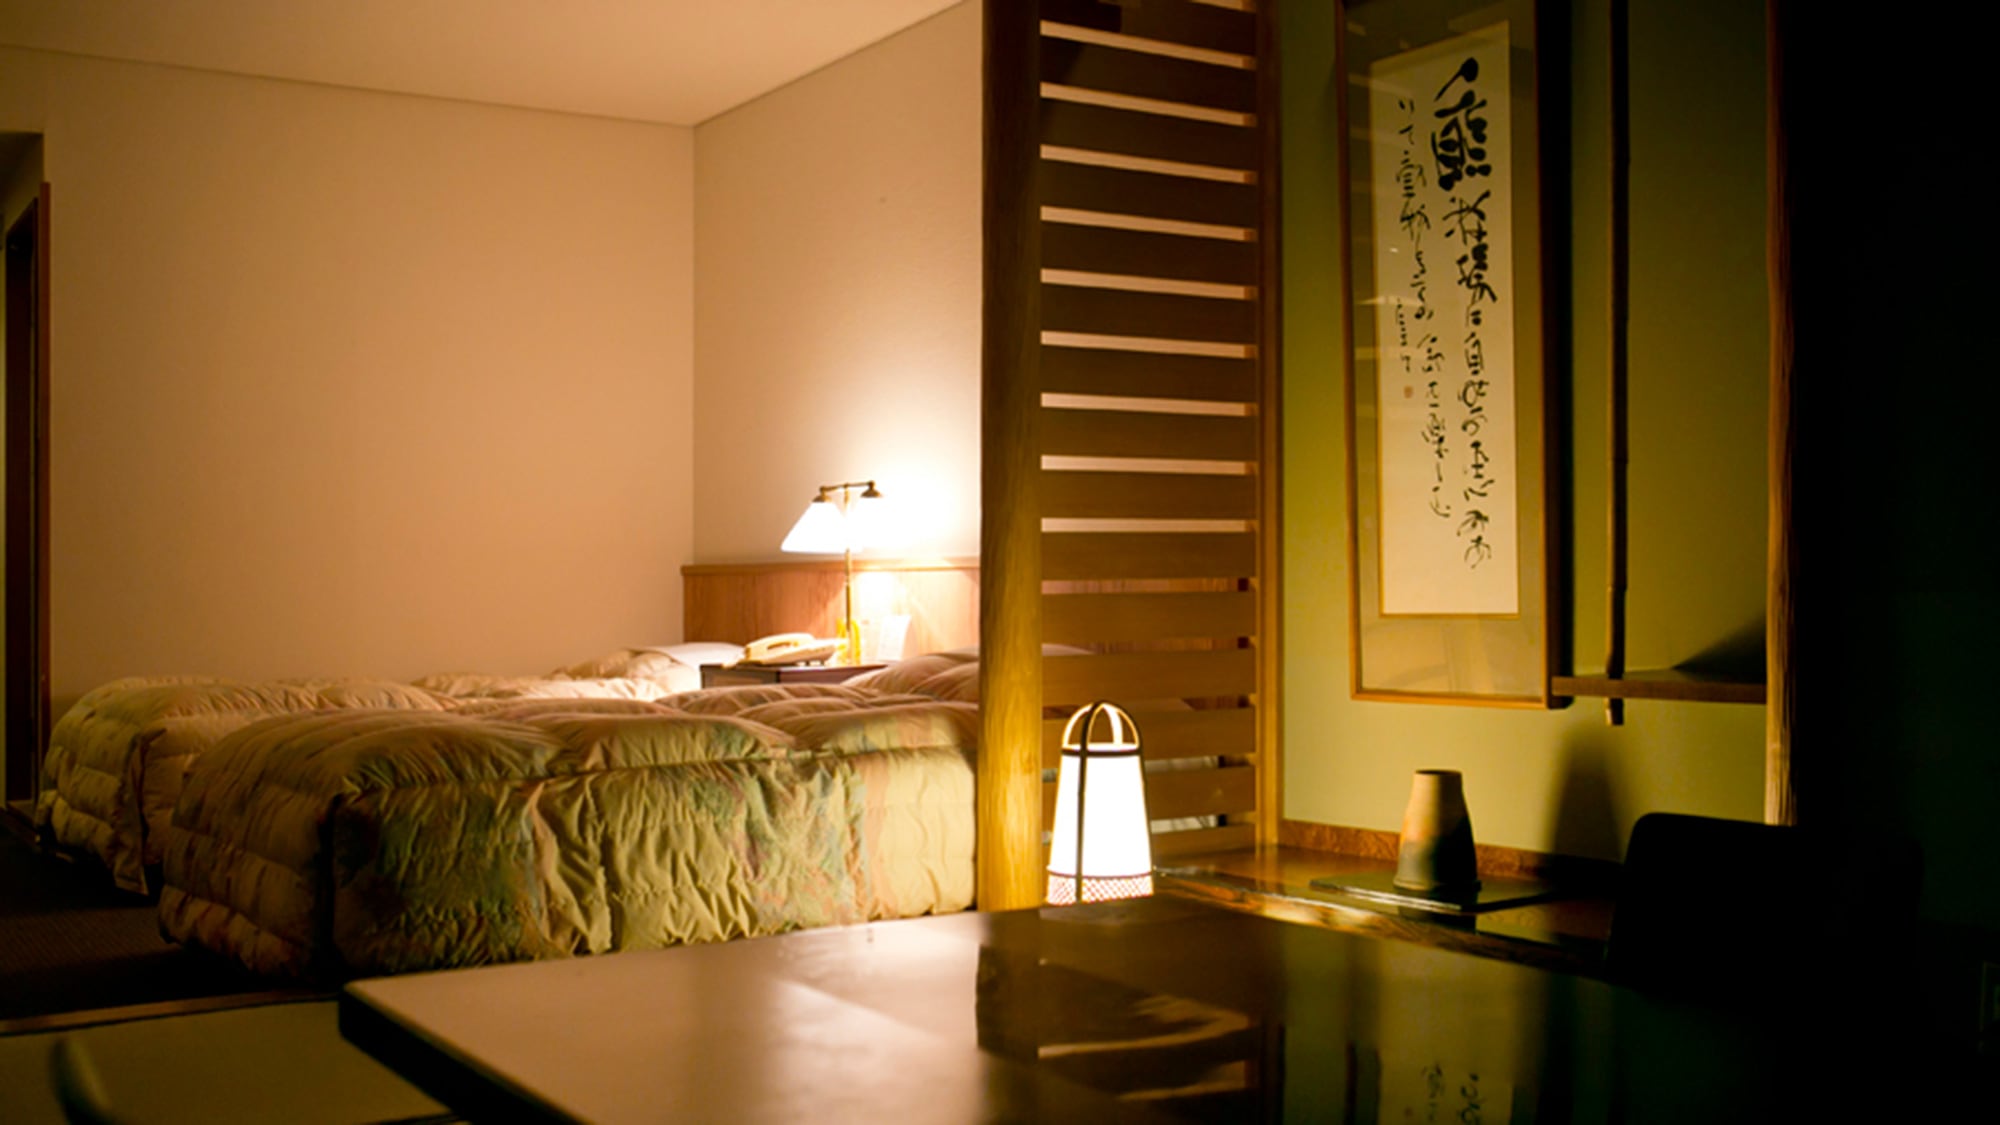 晚上的日式和西式房间